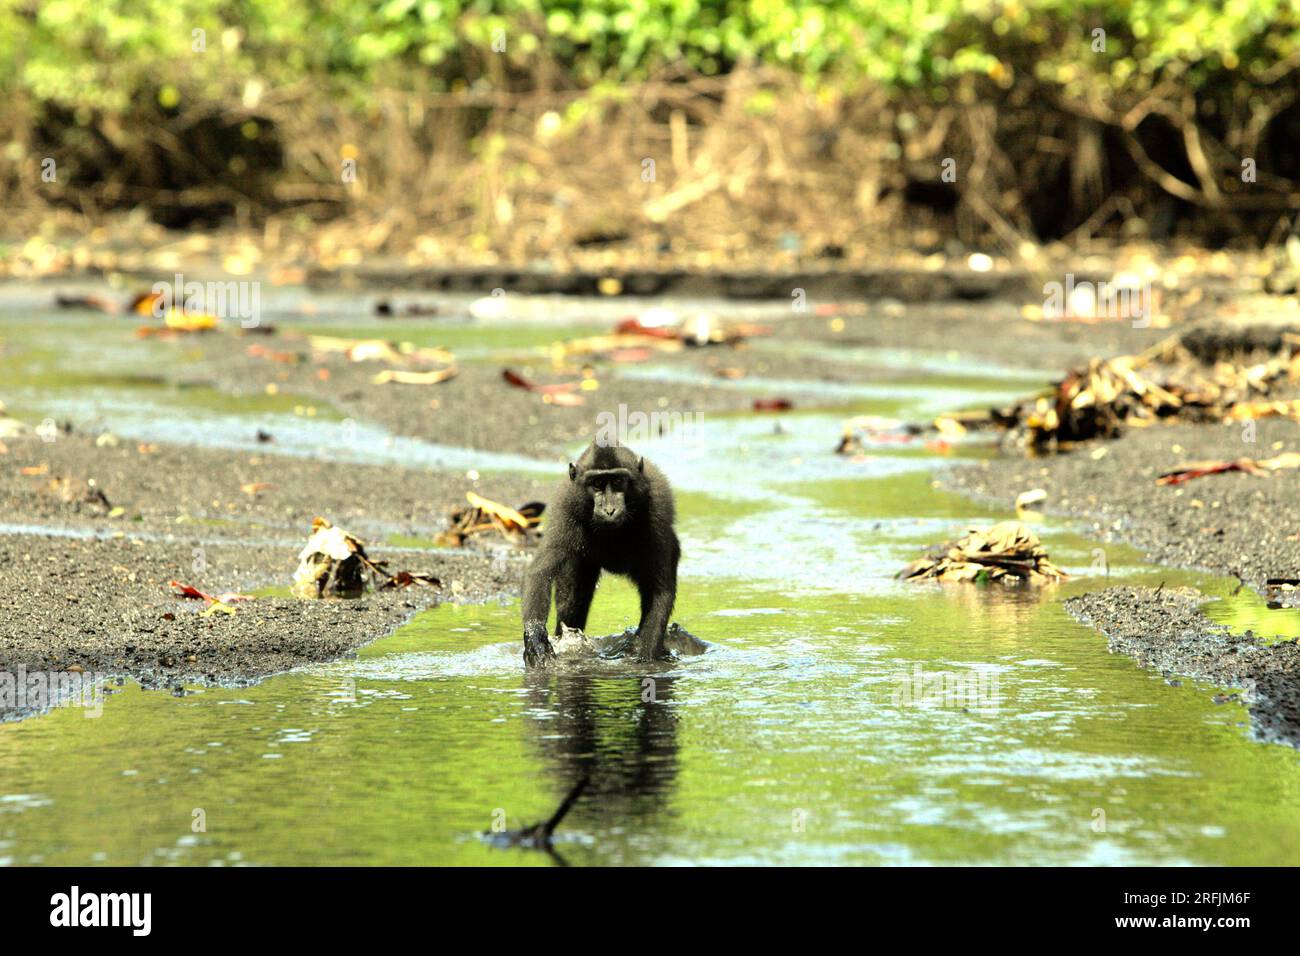 Un macaco a cresta nera di Sulawesi (Macaca nigra) si trova su un torrente vicino a una spiaggia nella foresta di Tangkoko, Sulawesi settentrionale, Indonesia. La temperatura è aumentata nella foresta di Tangkoko e l'abbondanza complessiva di frutta è diminuita, secondo un team di scienziati guidati da Marine Joly, pubblicato sull'International Journal of Primatology nel luglio 2023 (accessibile tramite Springer). "Tra il 2012 e il 2020, le temperature sono aumentate fino a 0,2 gradi Celsius all'anno nella foresta, e l'abbondanza complessiva di frutta è diminuita dell'1% all'anno", hanno scritto. Foto Stock